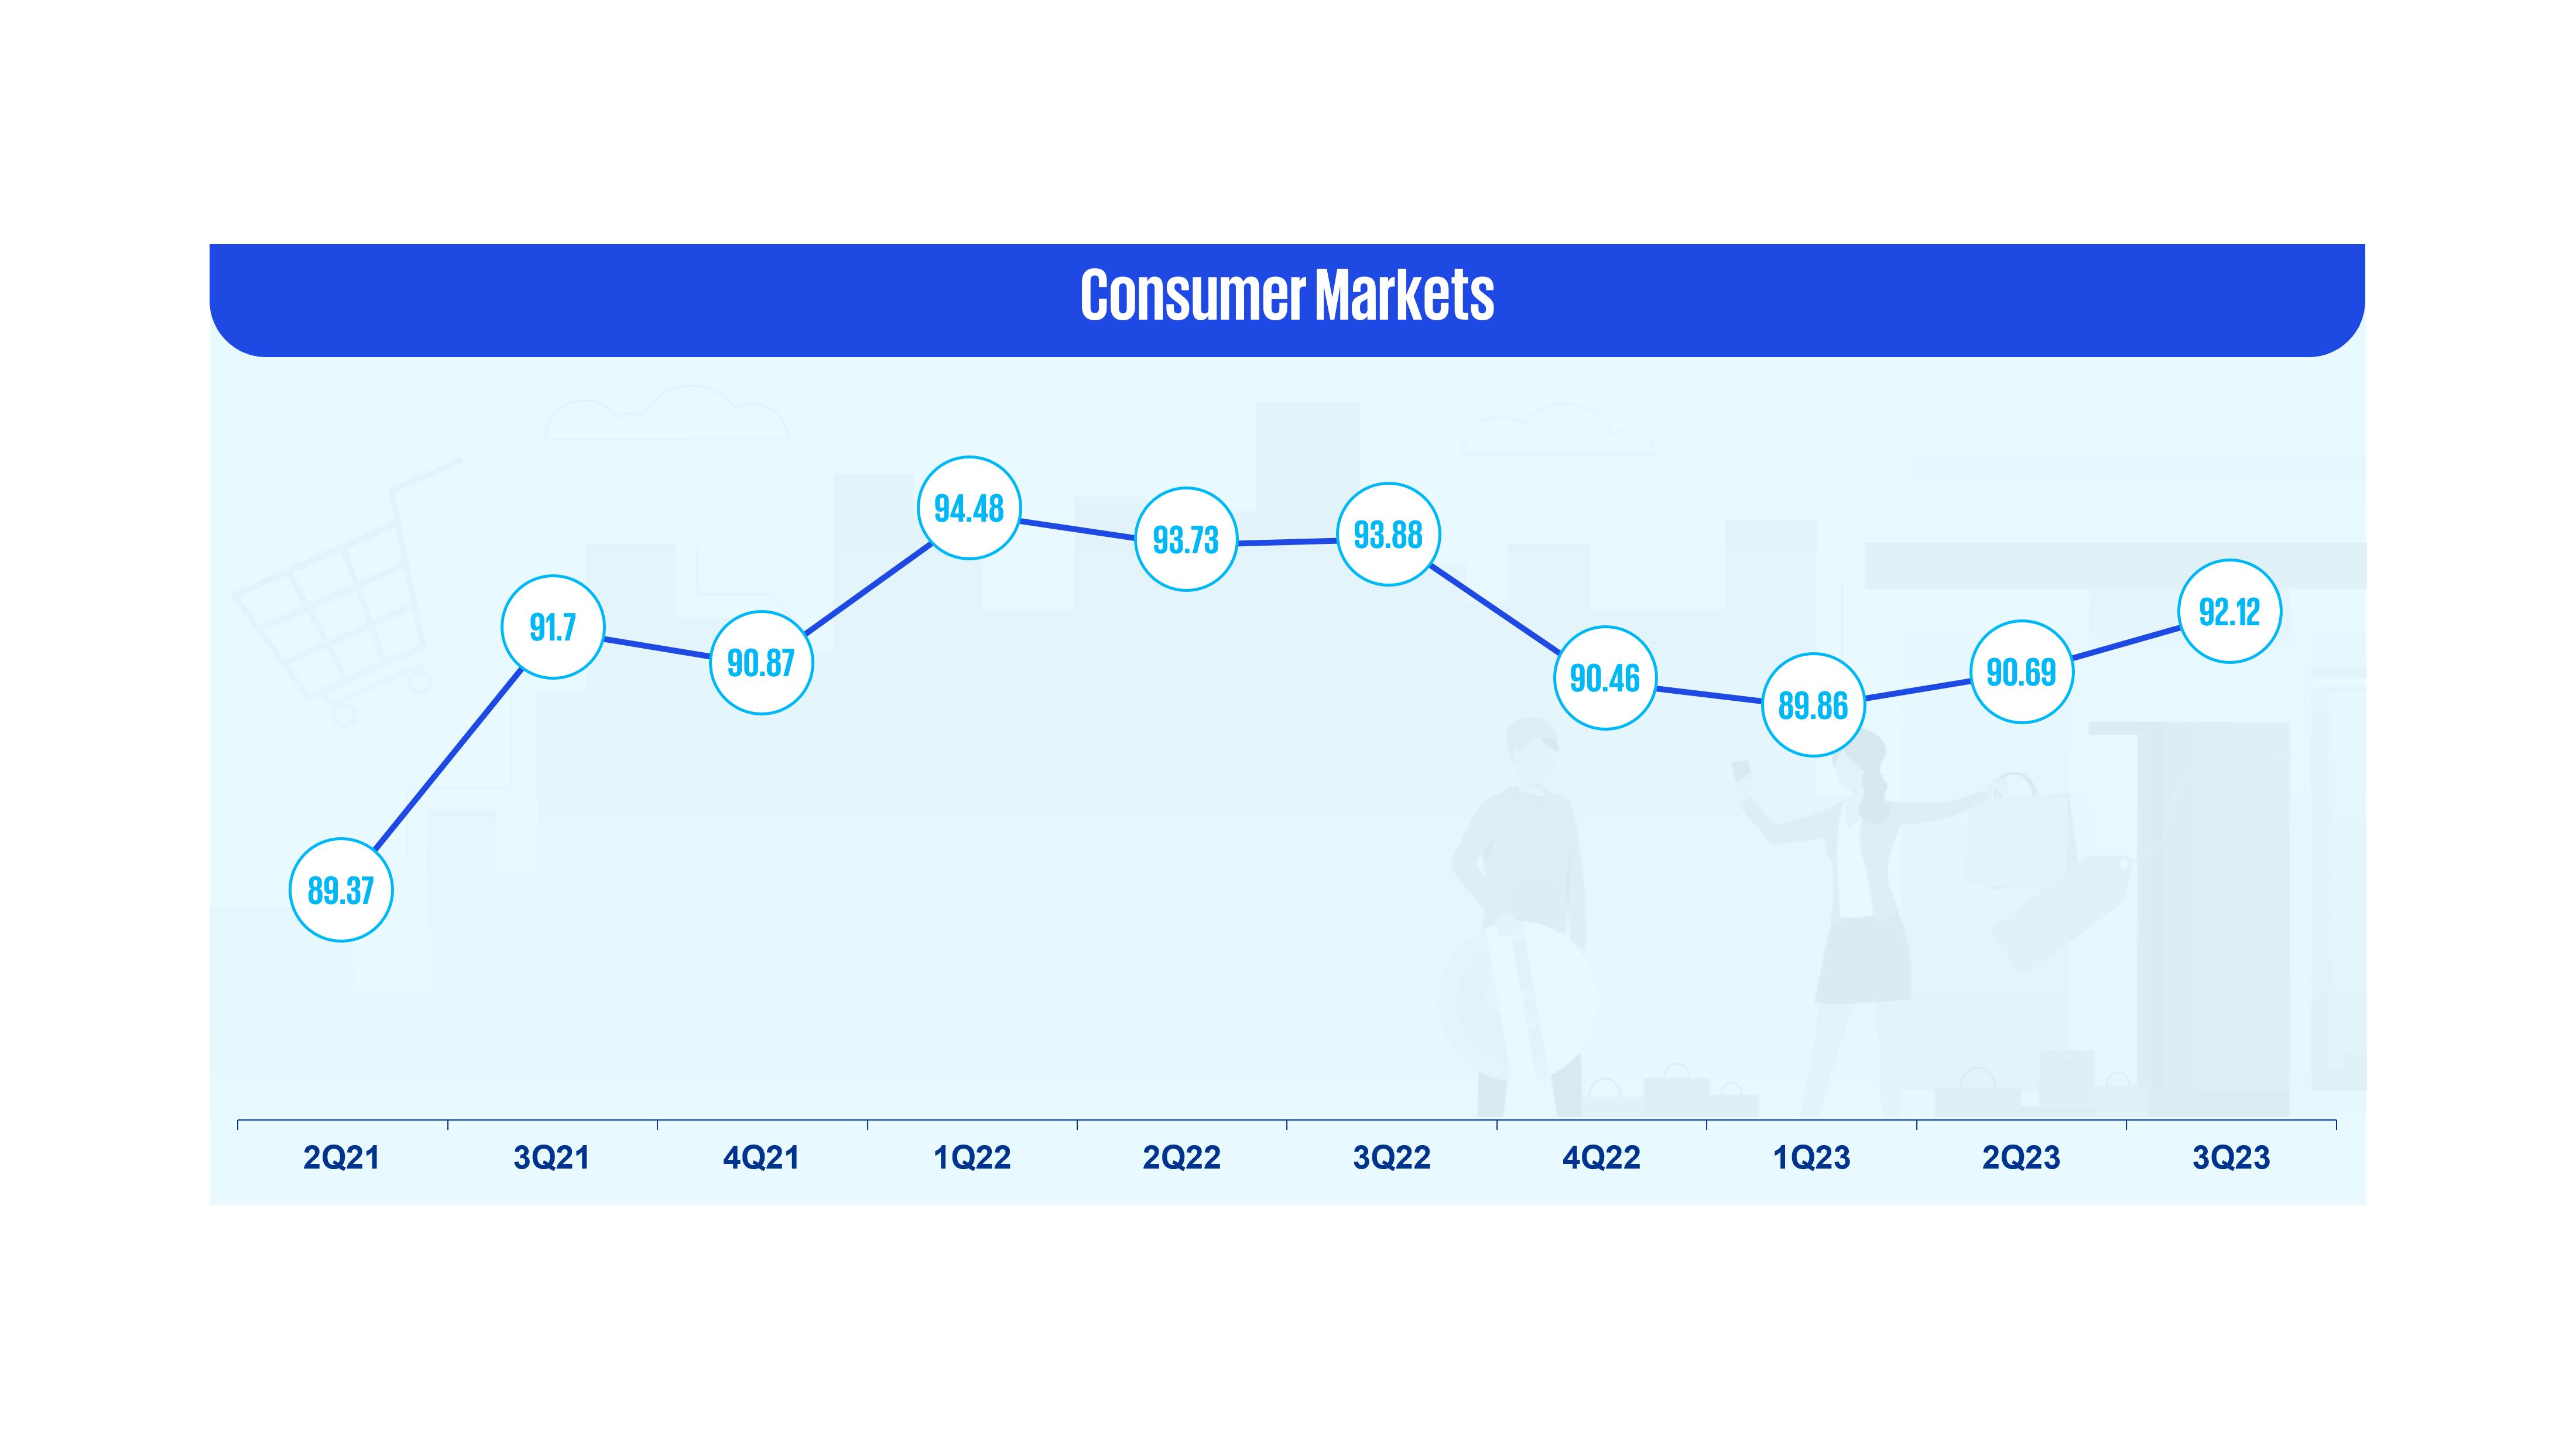 Consumer markets